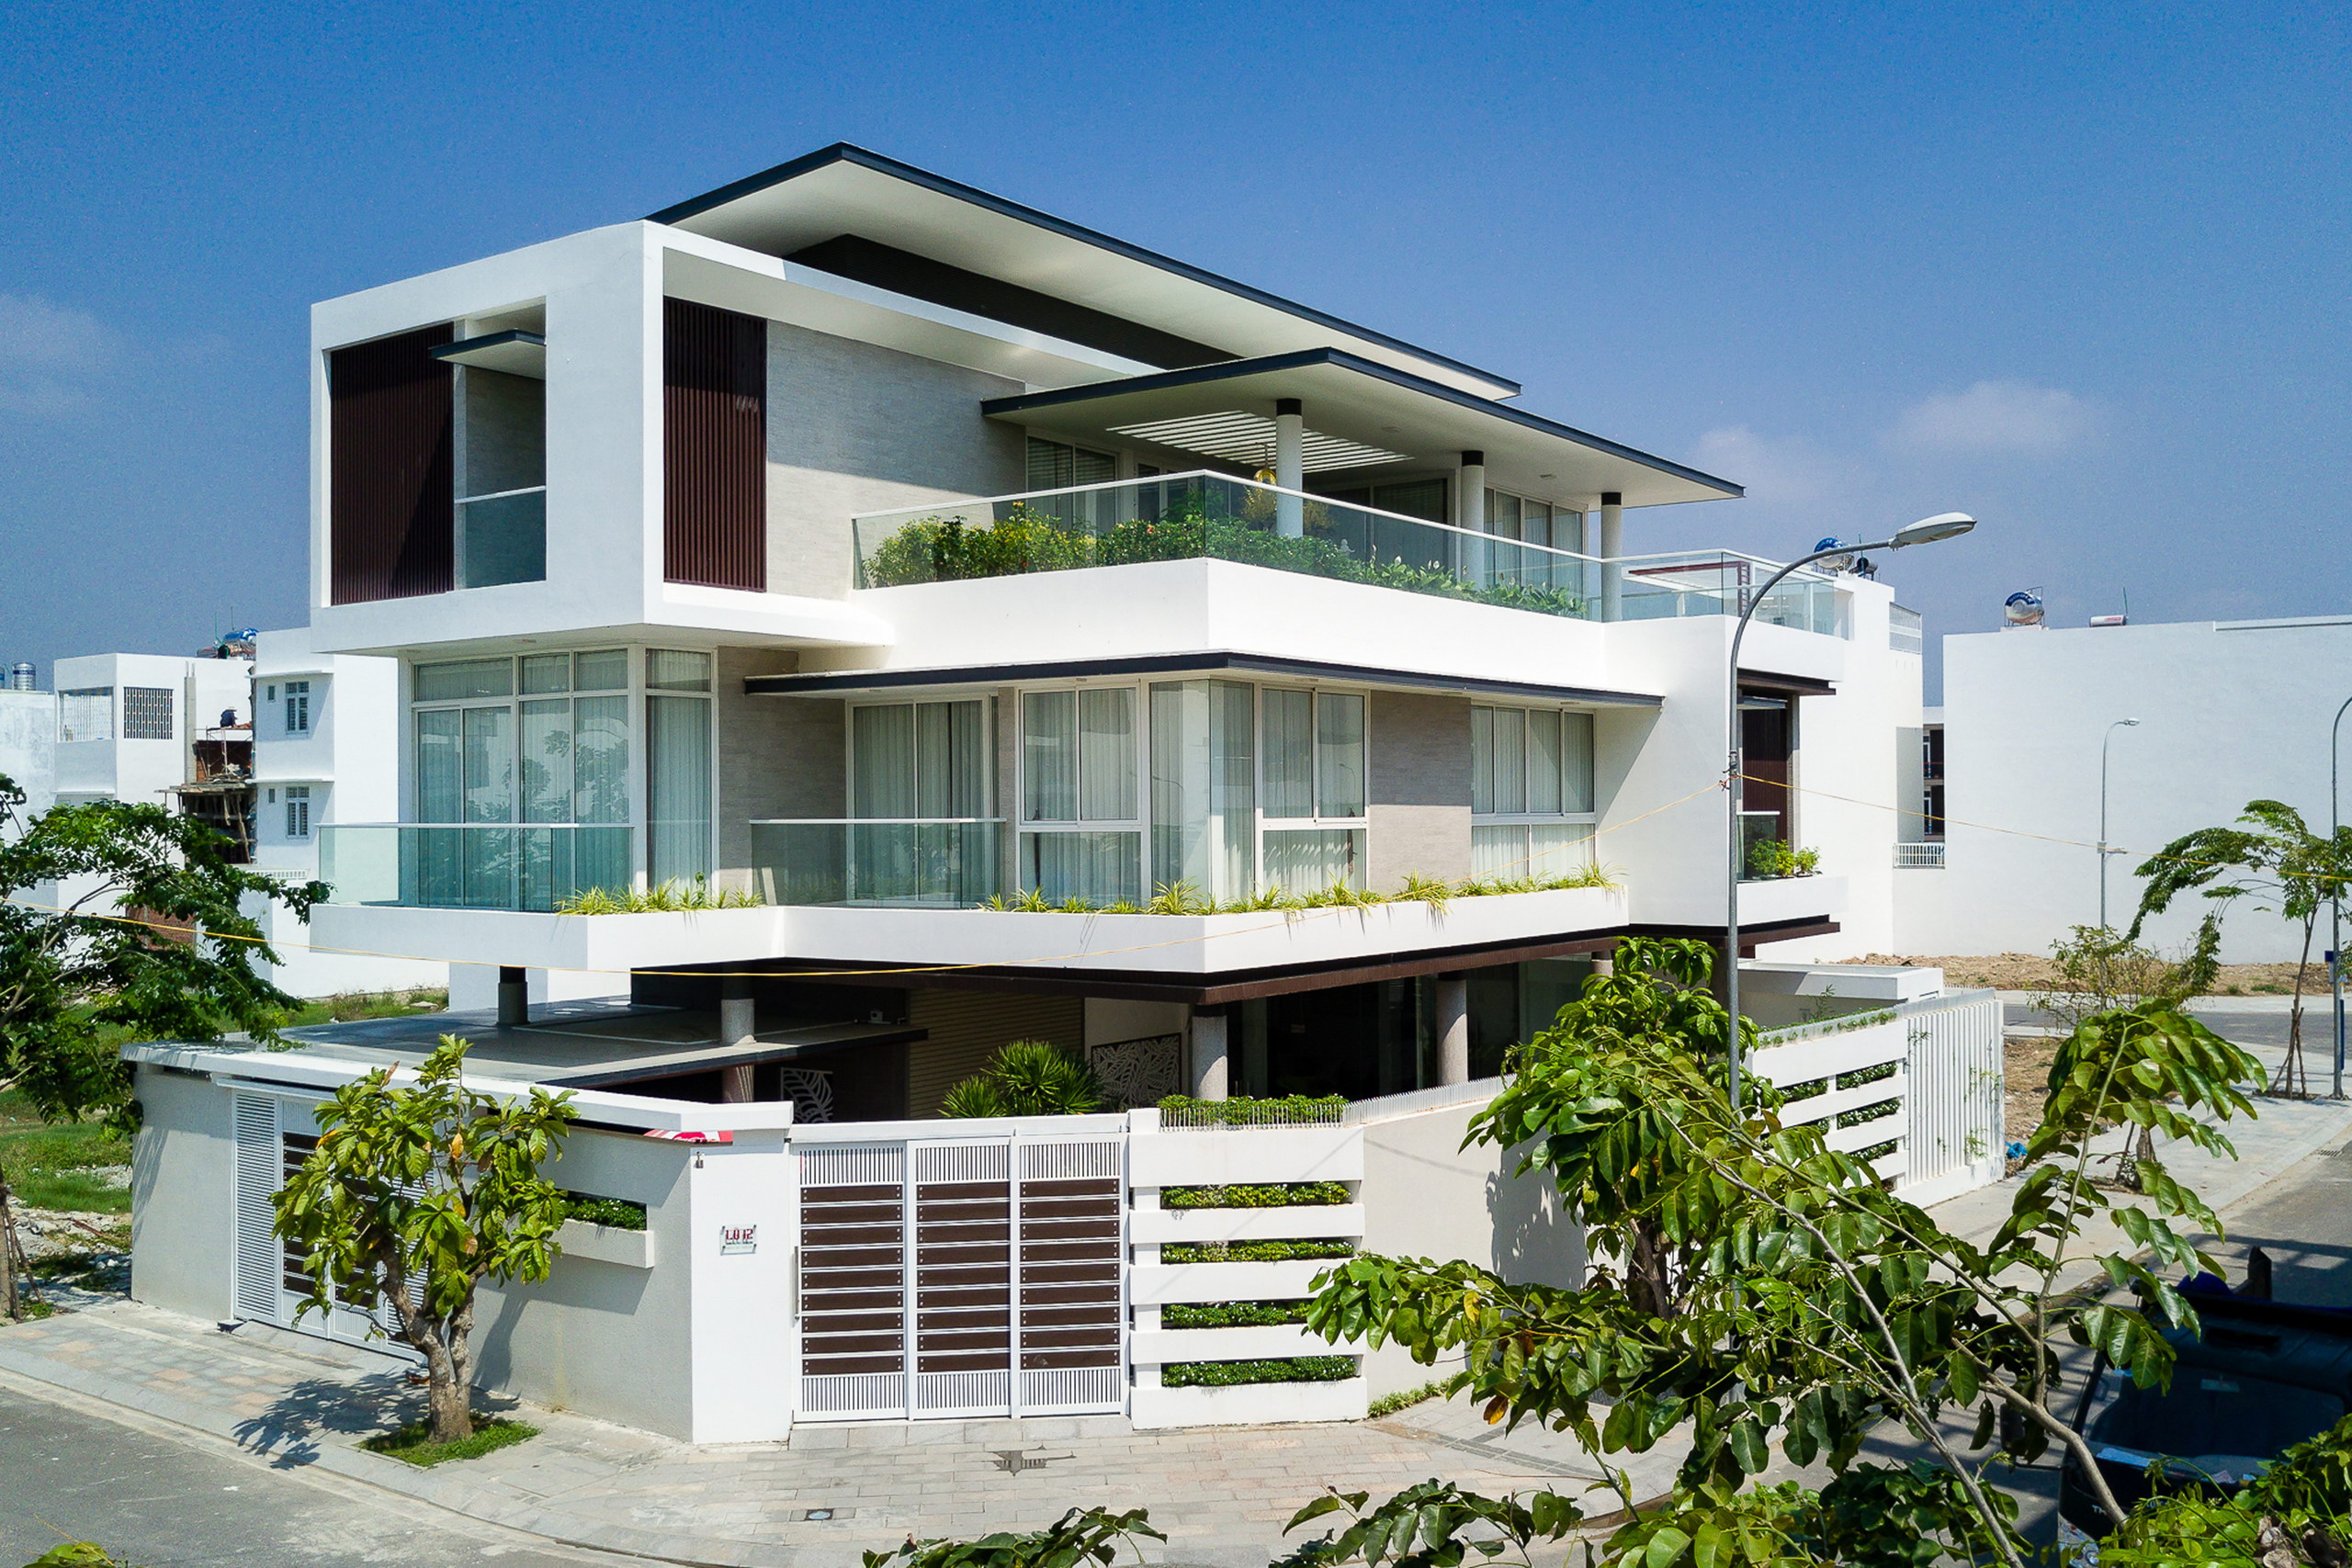 1a 3 - Biệt thự lô góc 3 tầng kiến trúc hiện đại - Công trình được thiết kế tại TP biển Nha Trang